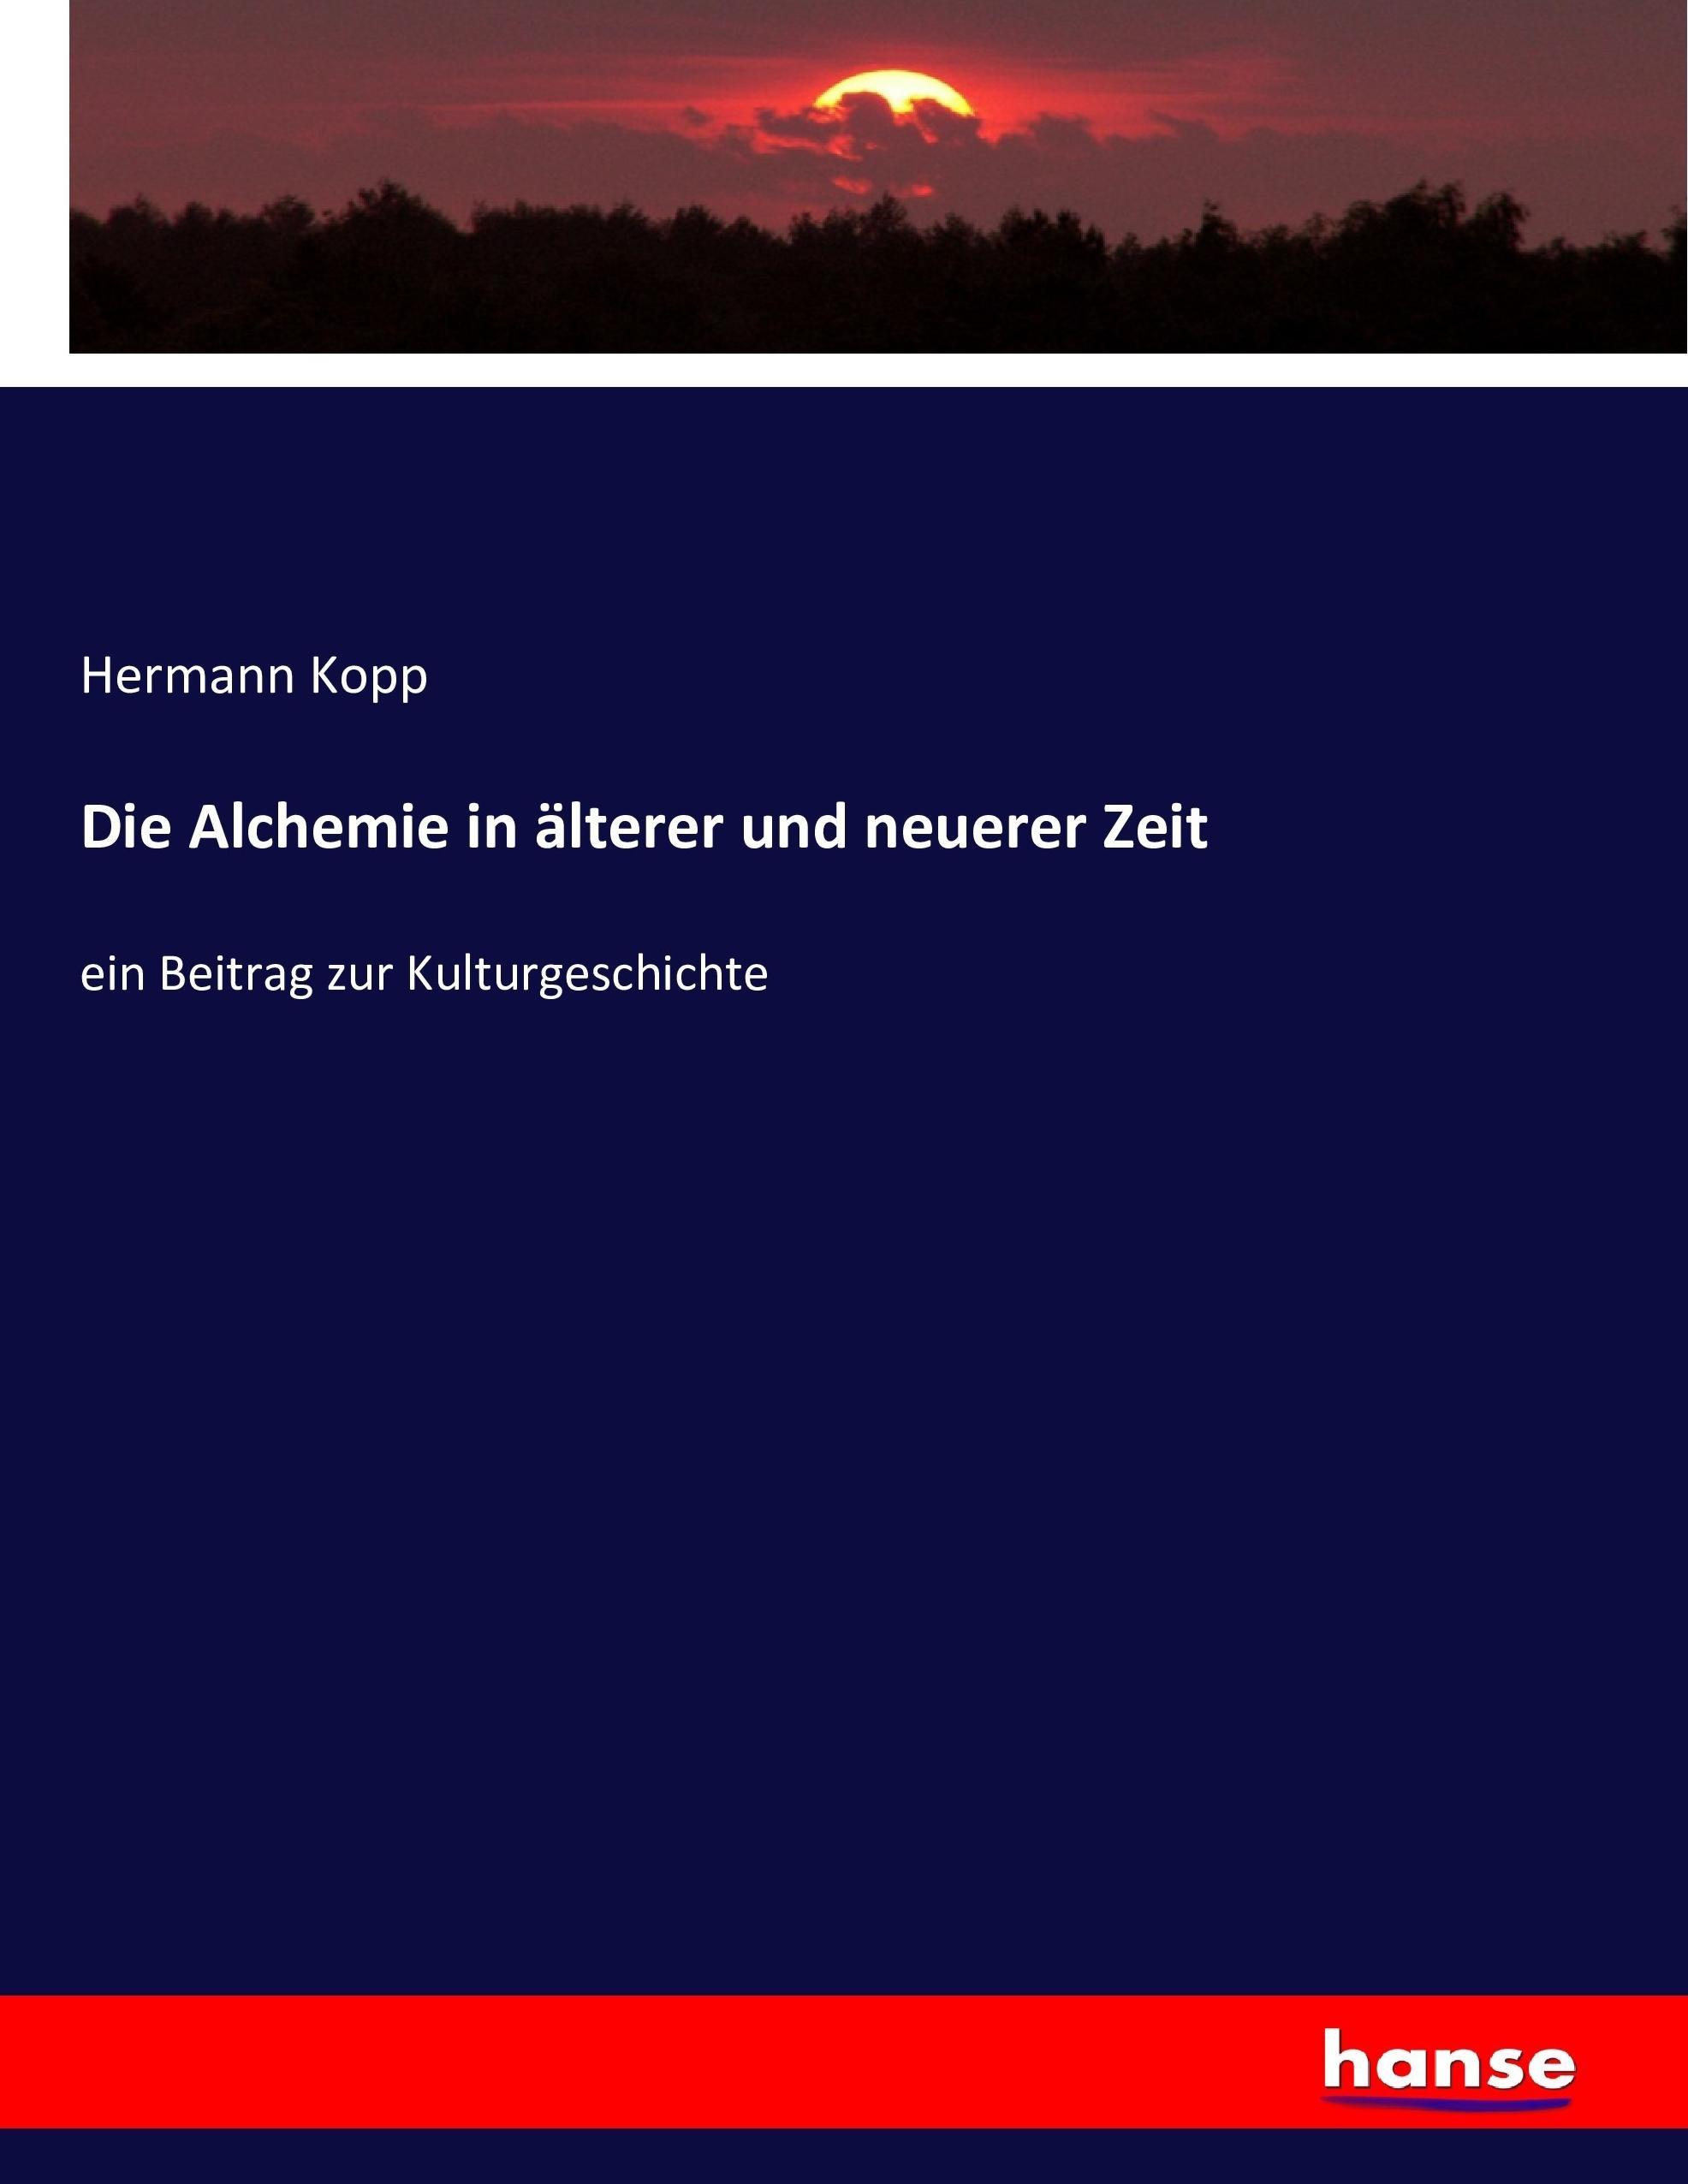 Die Alchemie in älterer und neuerer Zeit | ein Beitrag zur Kulturgeschichte | Hermann Kopp | Taschenbuch | Paperback | 712 S. | Deutsch | 2017 | hansebooks | EAN 9783743491441 - Kopp, Hermann